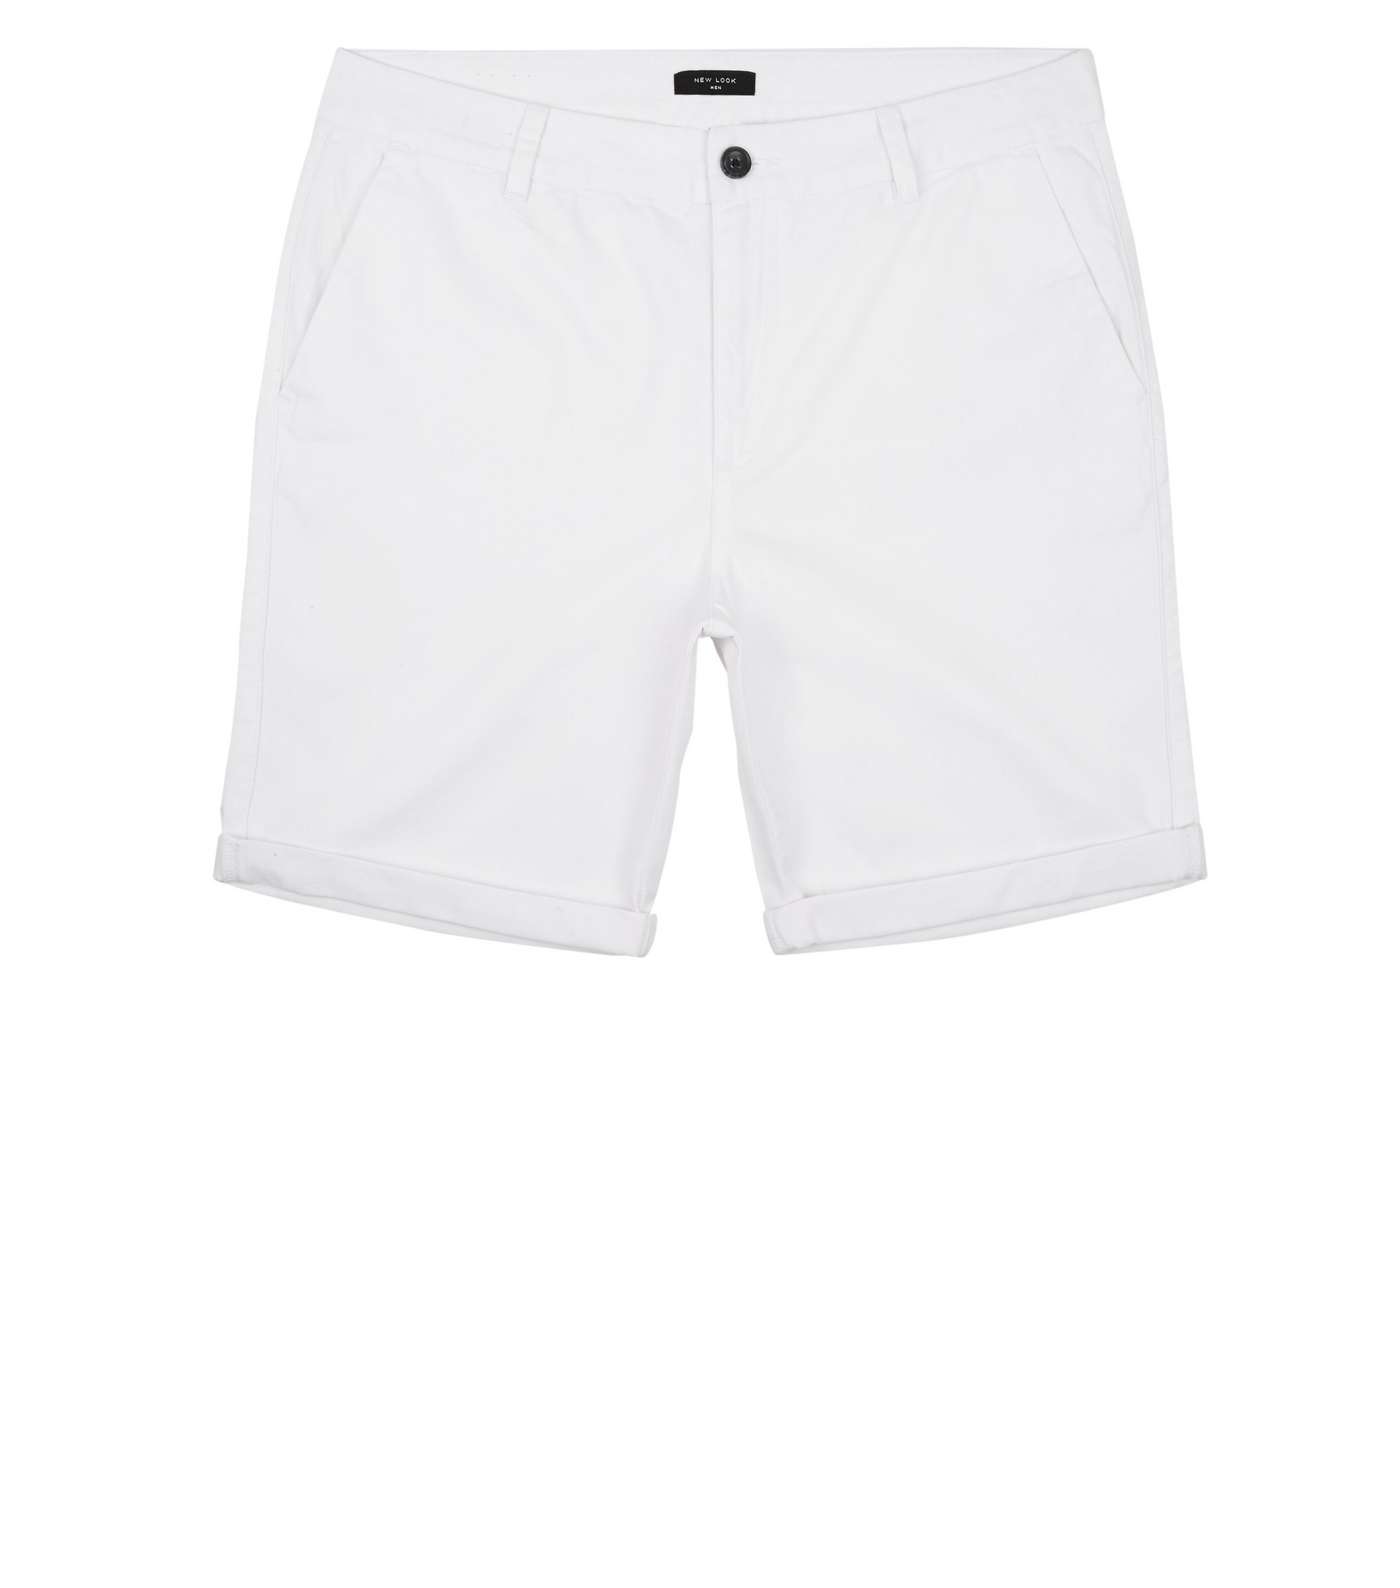 White Chino Cotton Shorts Image 4